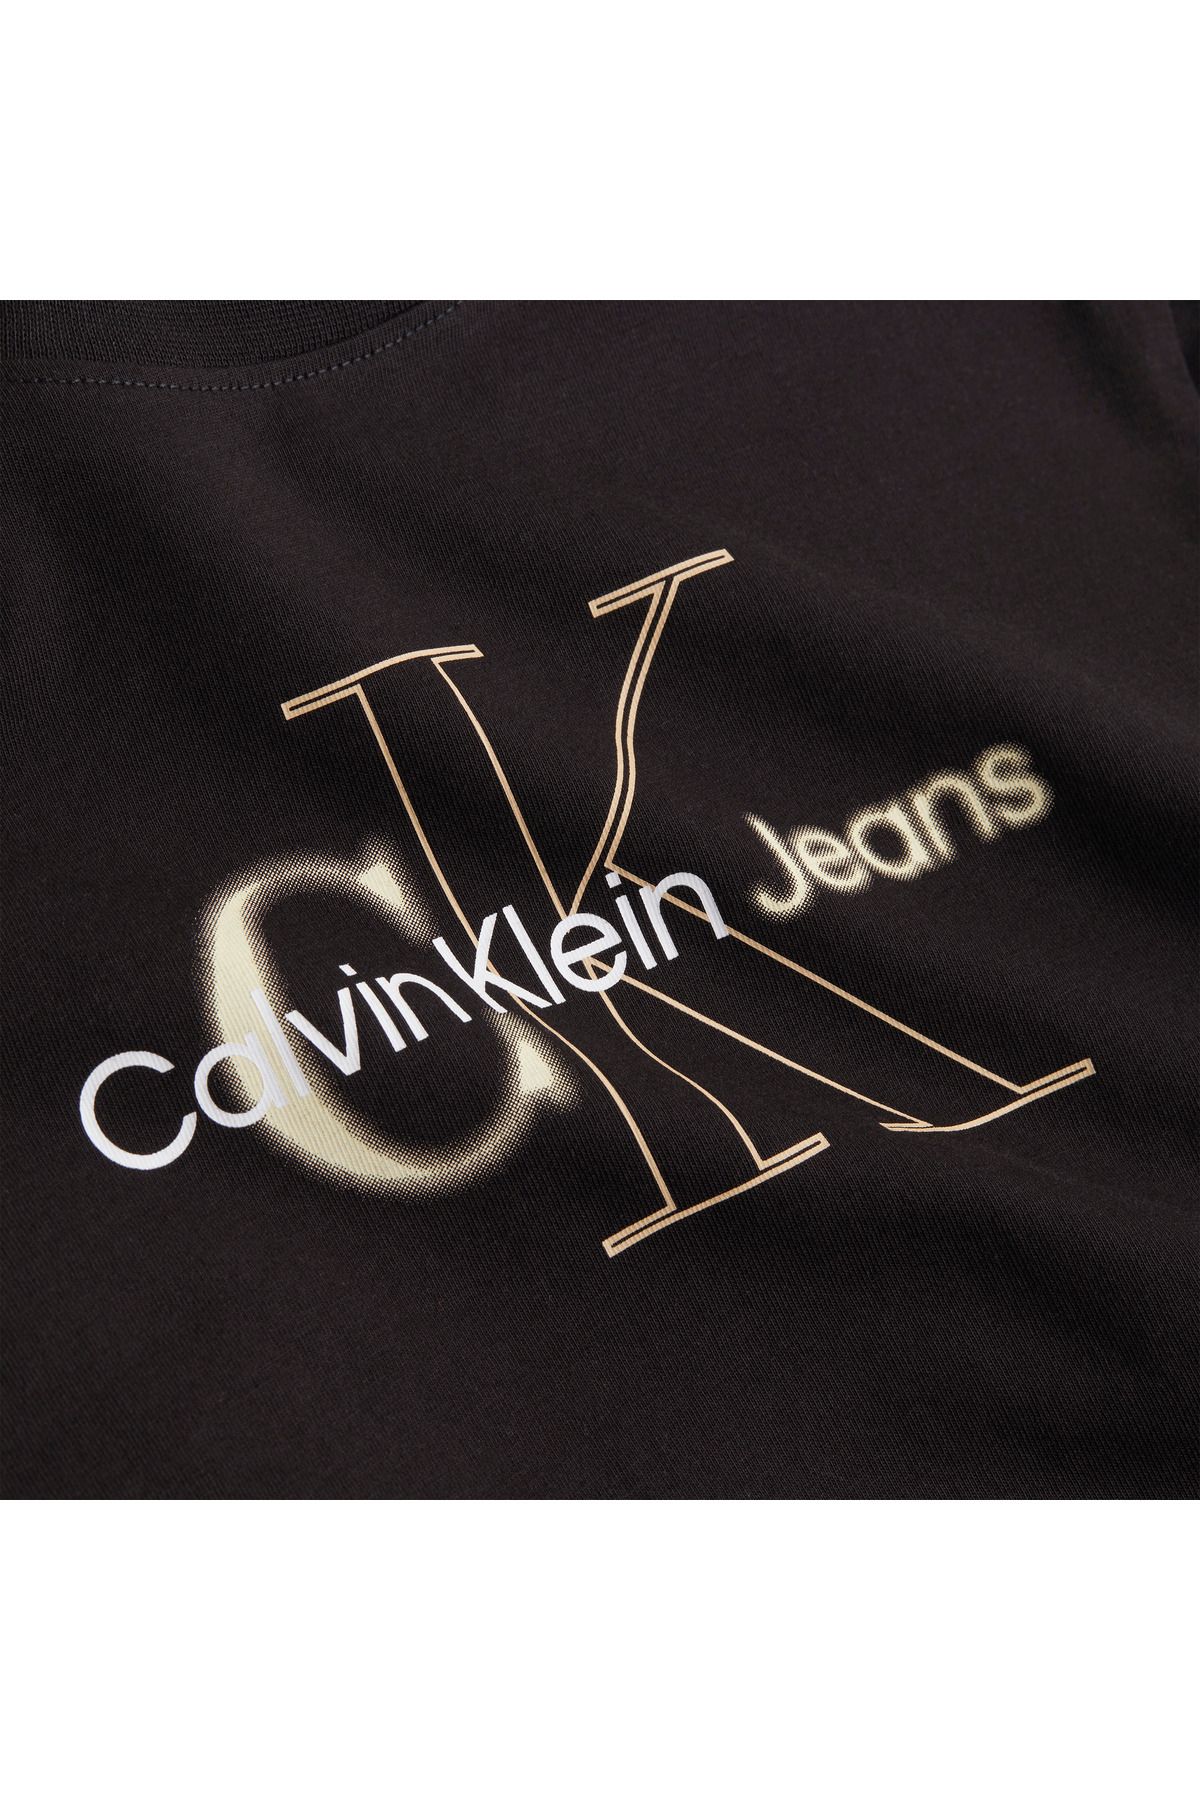 Calvin Klein Calvin Klein پیراهن زنانه نخی با لوگو سیاه